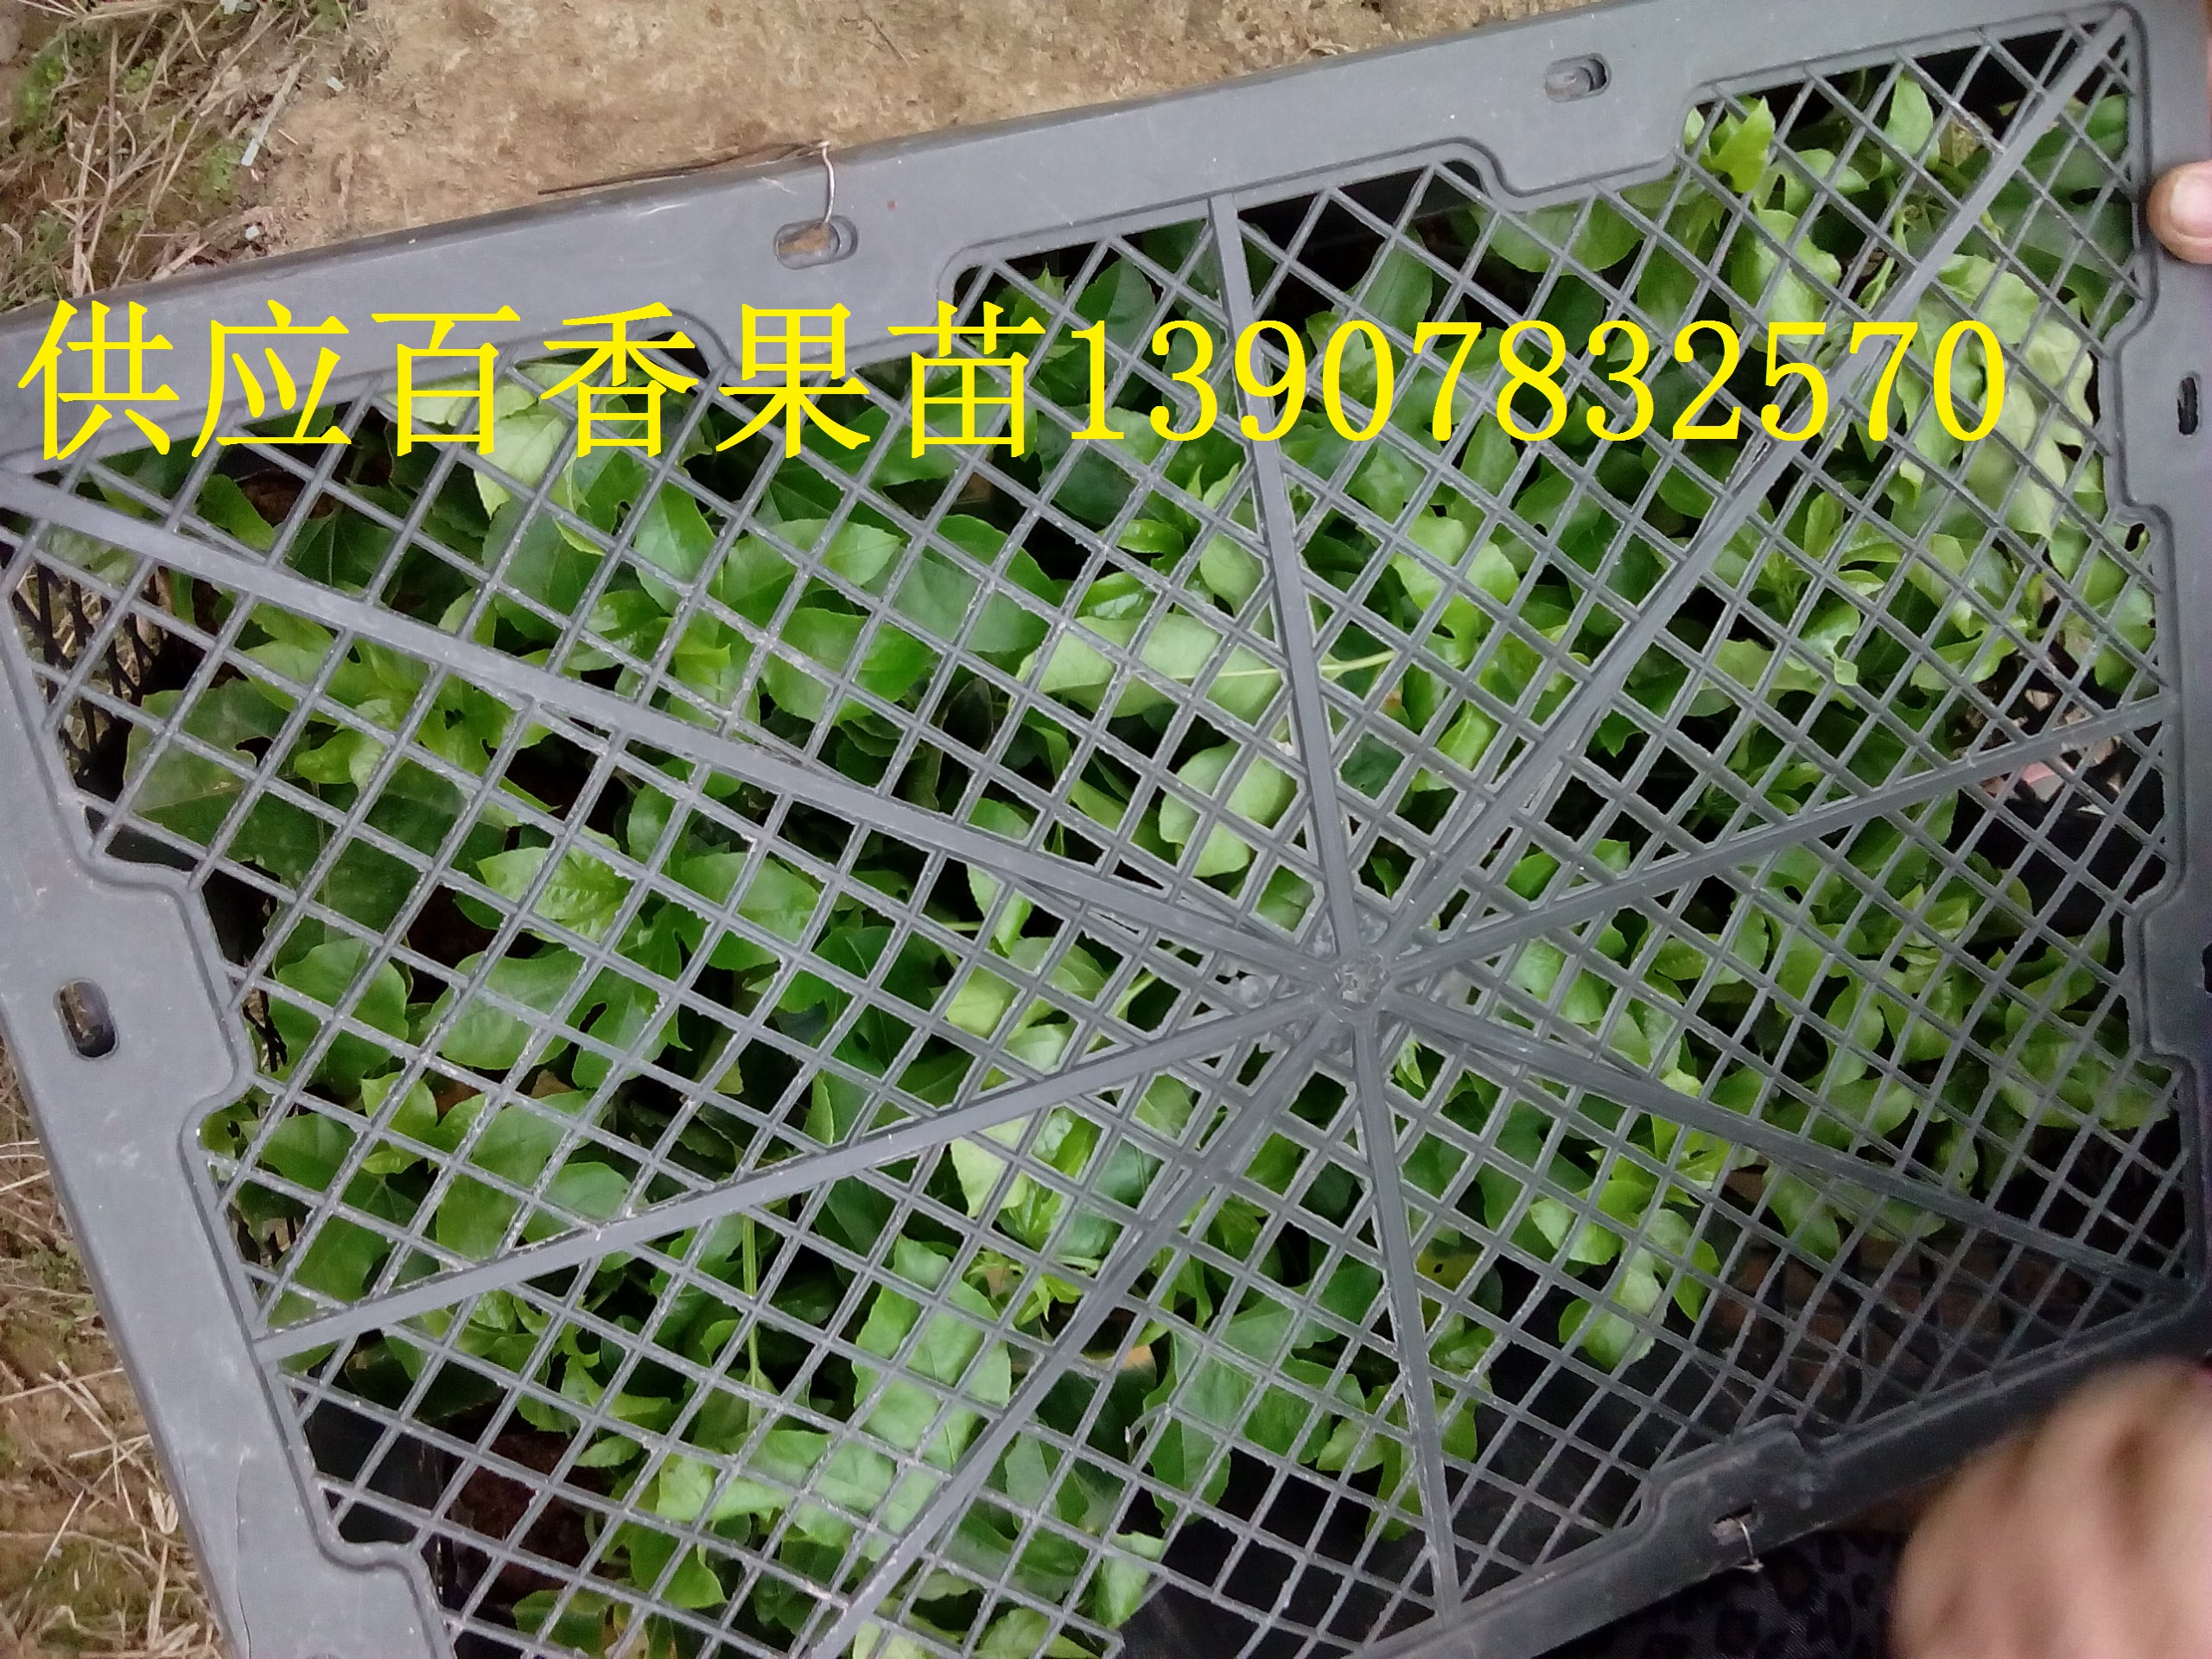 广西百香果苗供应用于种植的广西百香果苗，广西百香果苗批发，广西百香果苗种植园